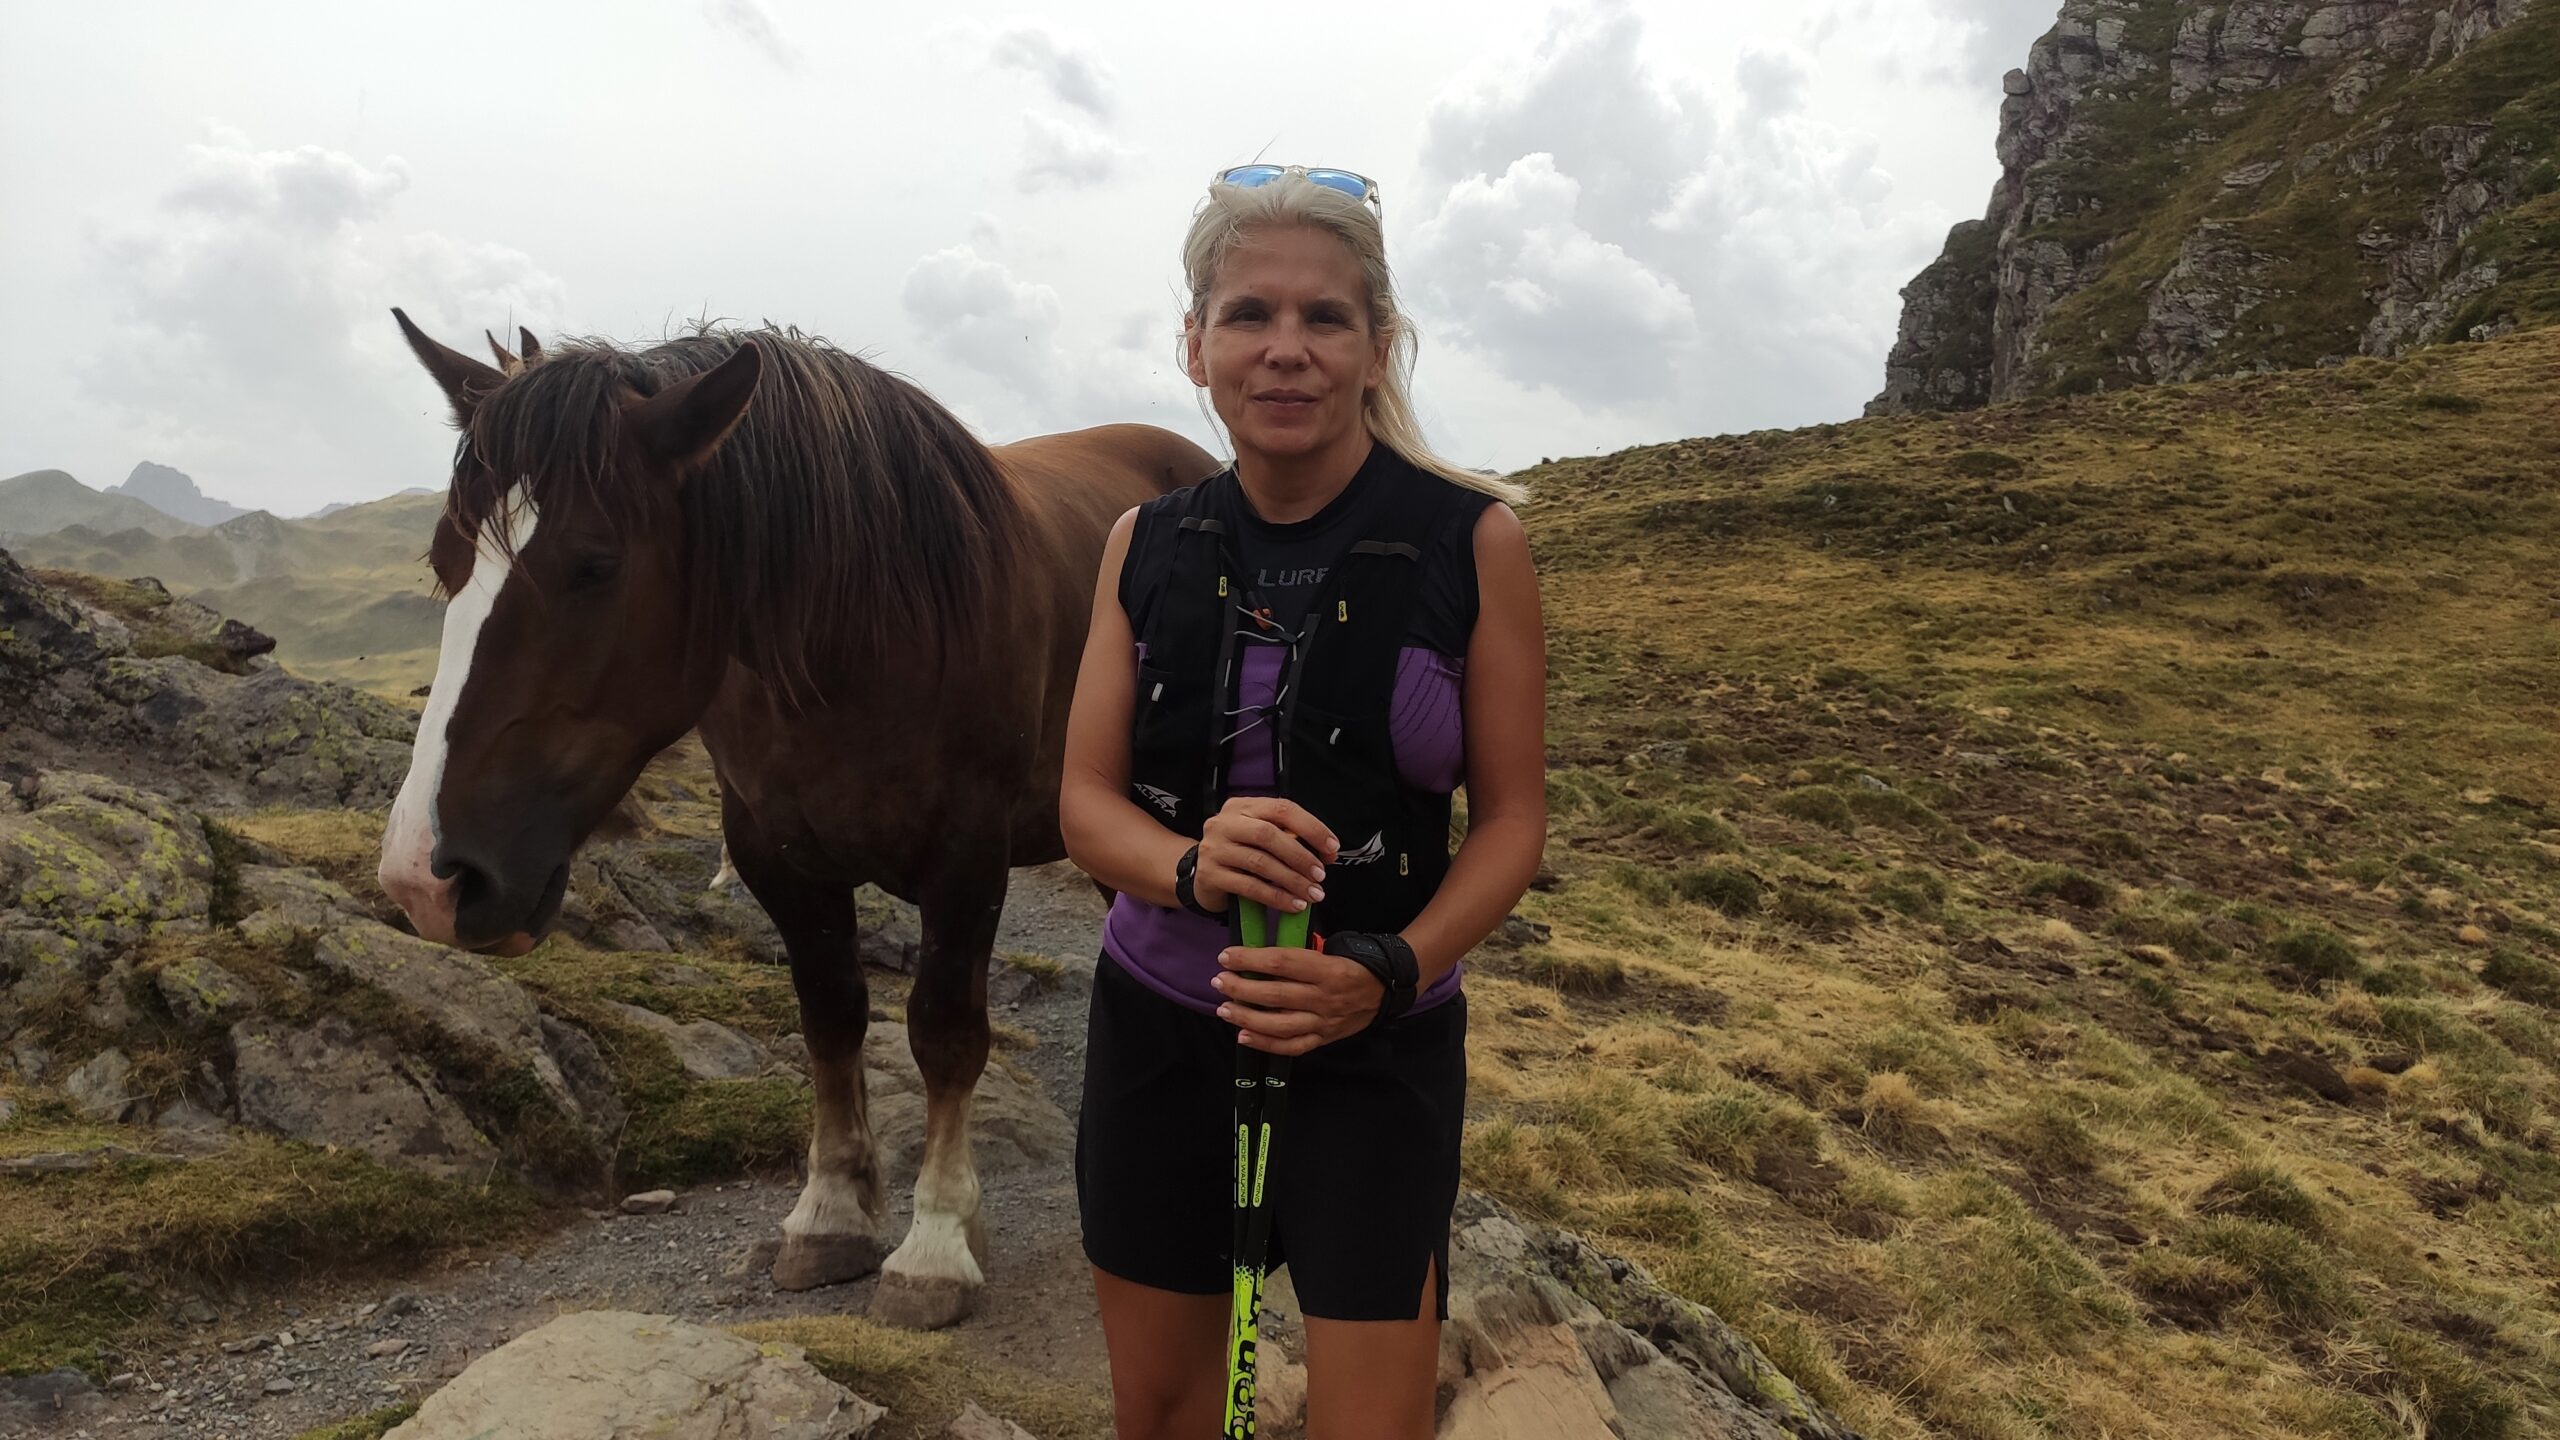 Peli aparece en medio de la foto en un paisaje montañoso con ropa de montaña y bastones de marcha nórdica. A su izquierda y justo detrás tiene un caballo que parece estar posando junto a ella.